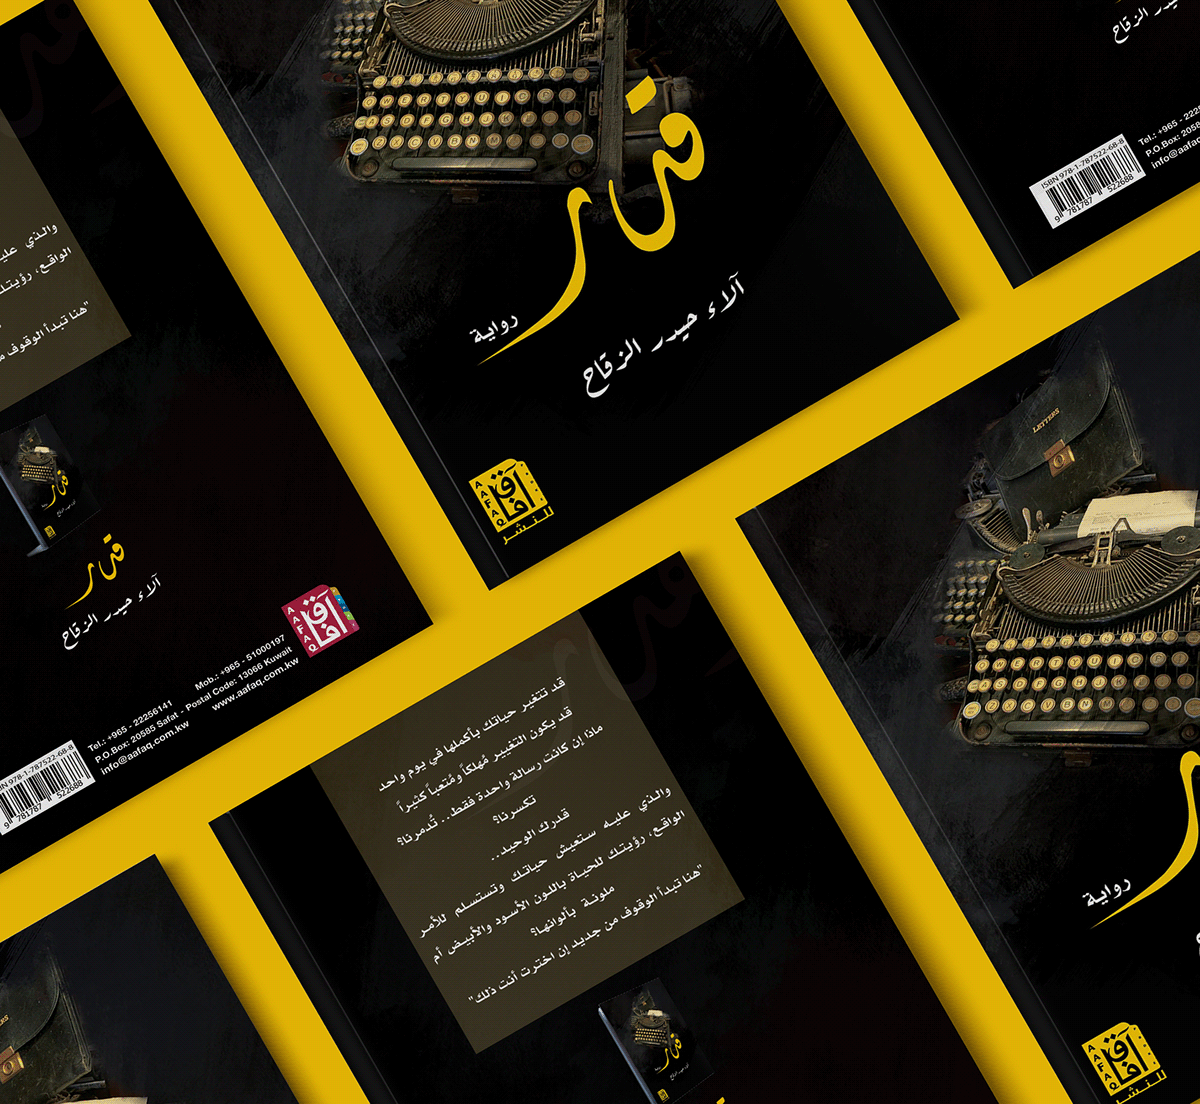 #kuwait #Book_Fair #Design #book #cover